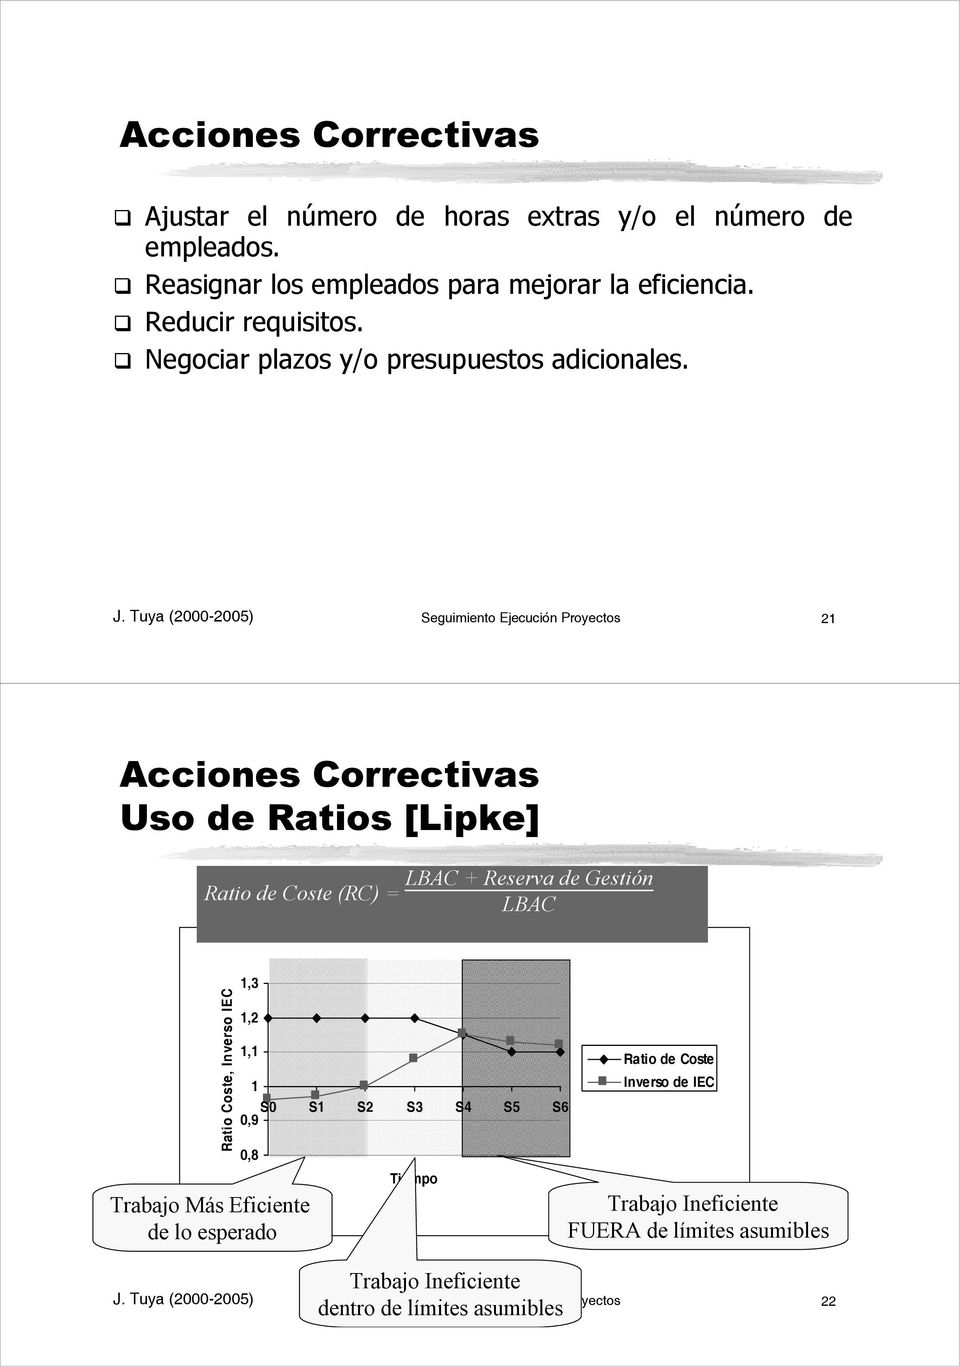 Tuya (2000-2005) Seguimiento Ejecución Proyectos 21 Acciones Correctivas Uso de Ratios [Lipke] Ratio de Coste (RC) = LBAC + Reserva de Gestión LBAC Ratio Coste,